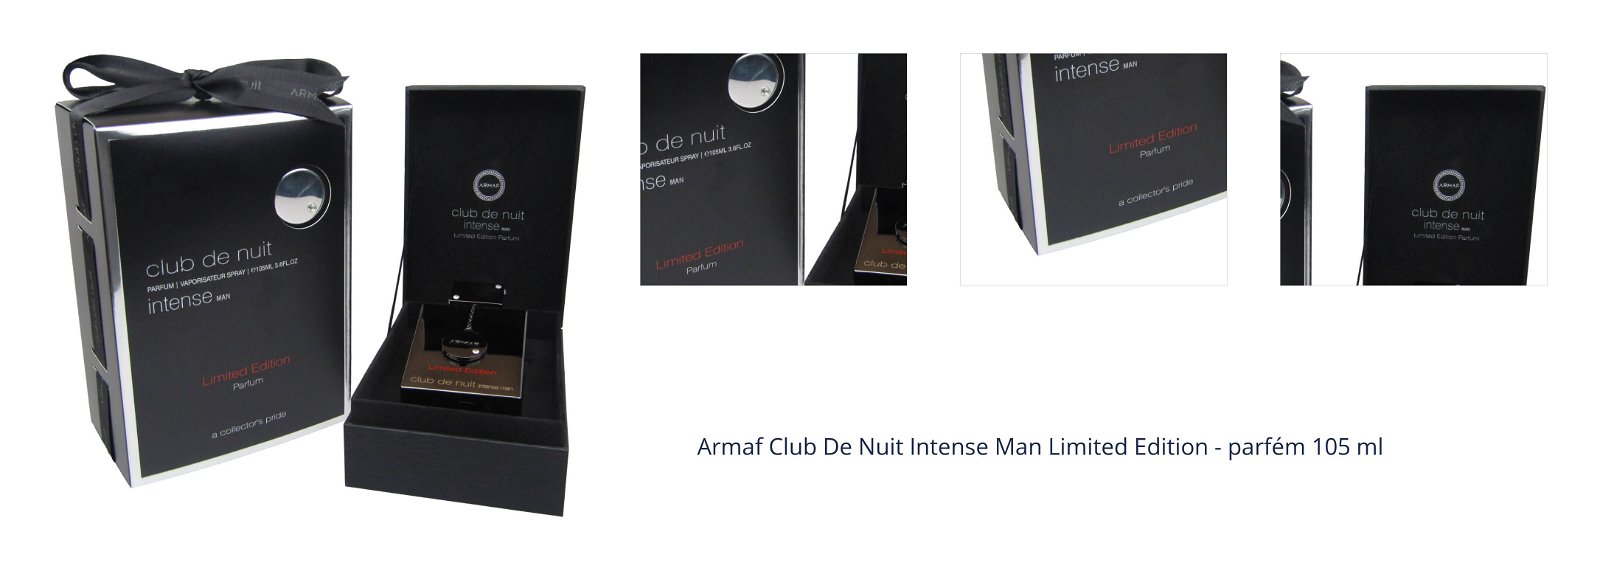 Armaf Club De Nuit Intense Man Limited Edition - parfém 105 ml 1